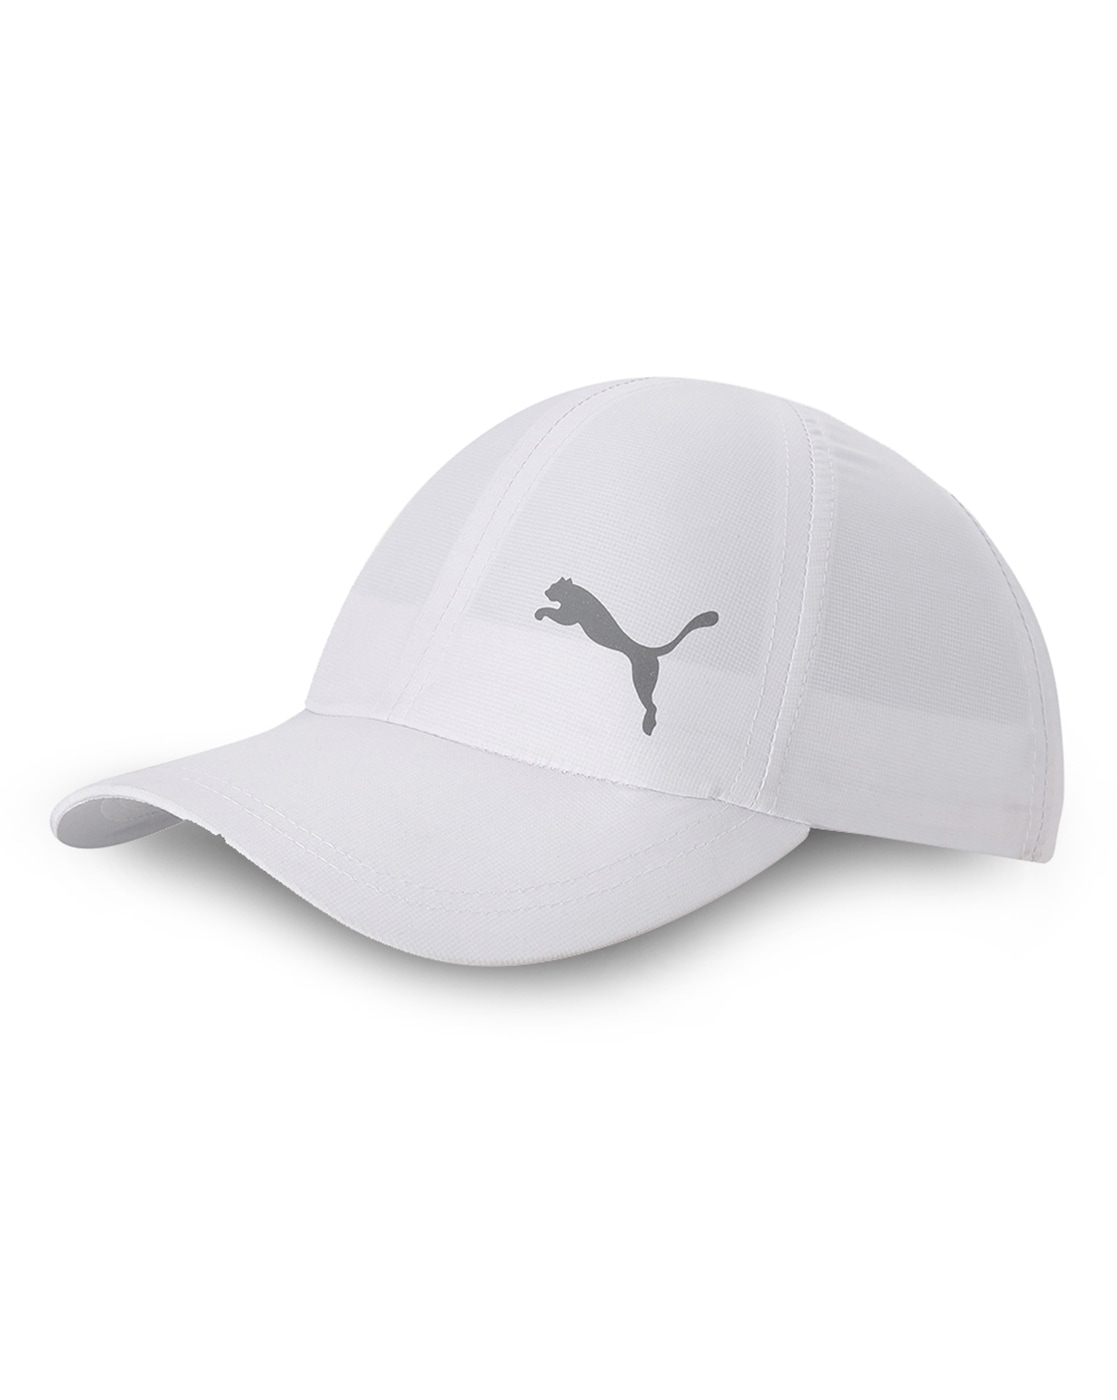 uno Ganar Personal Buy Black Caps & Hats for Men by Puma Online | Ajio.com